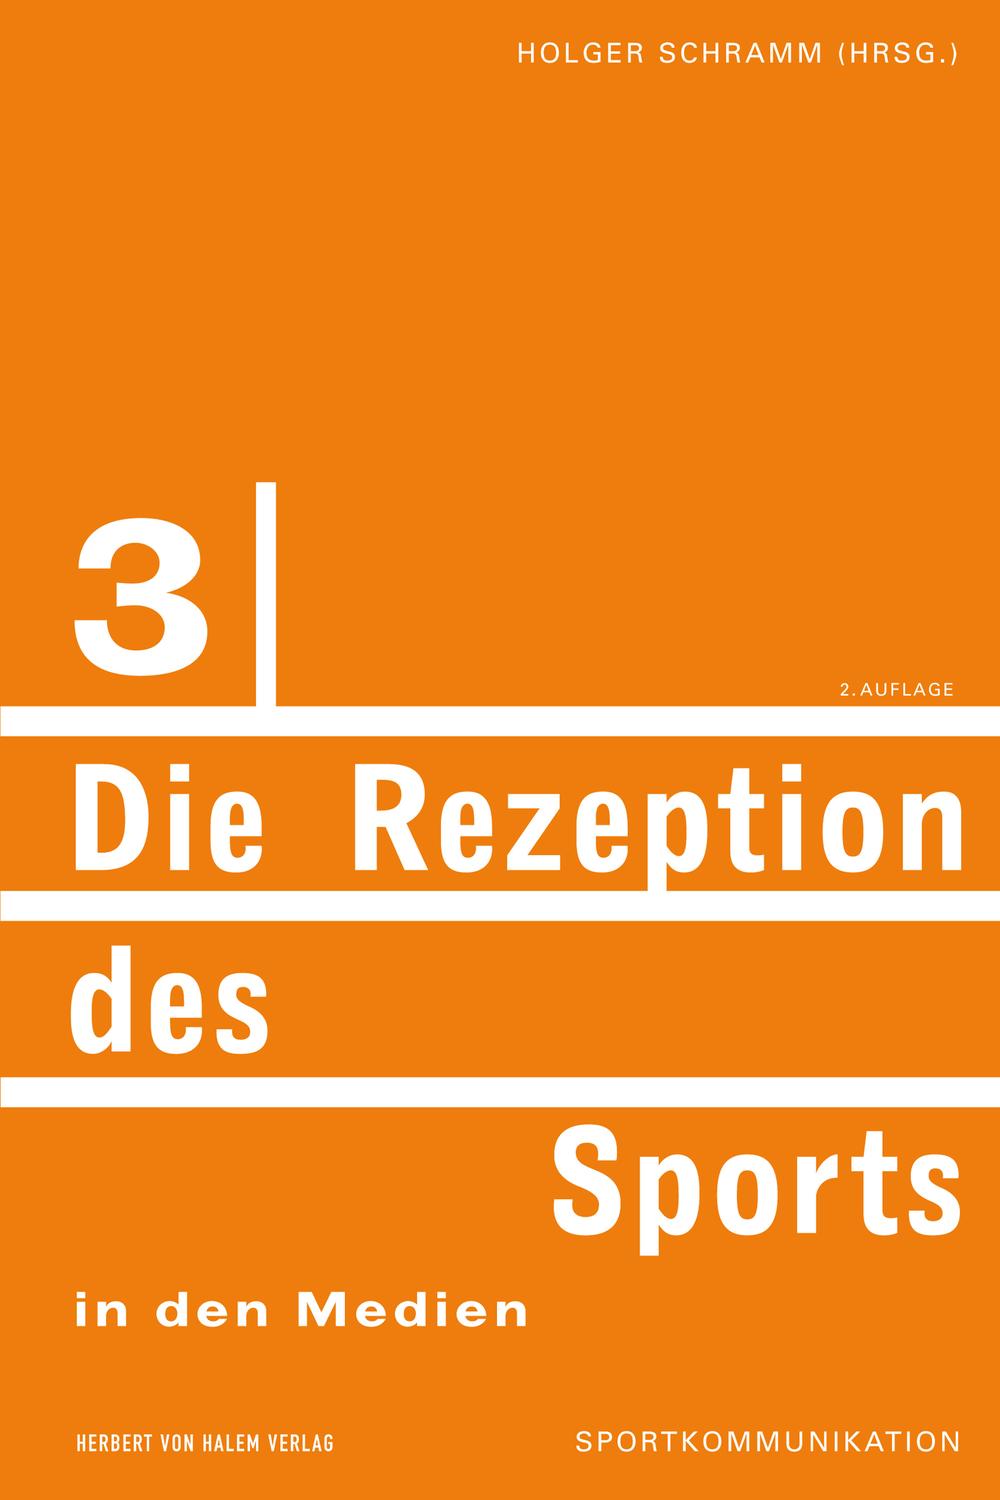 Die Rezeption des Sports in den Medien - Holger Schramm